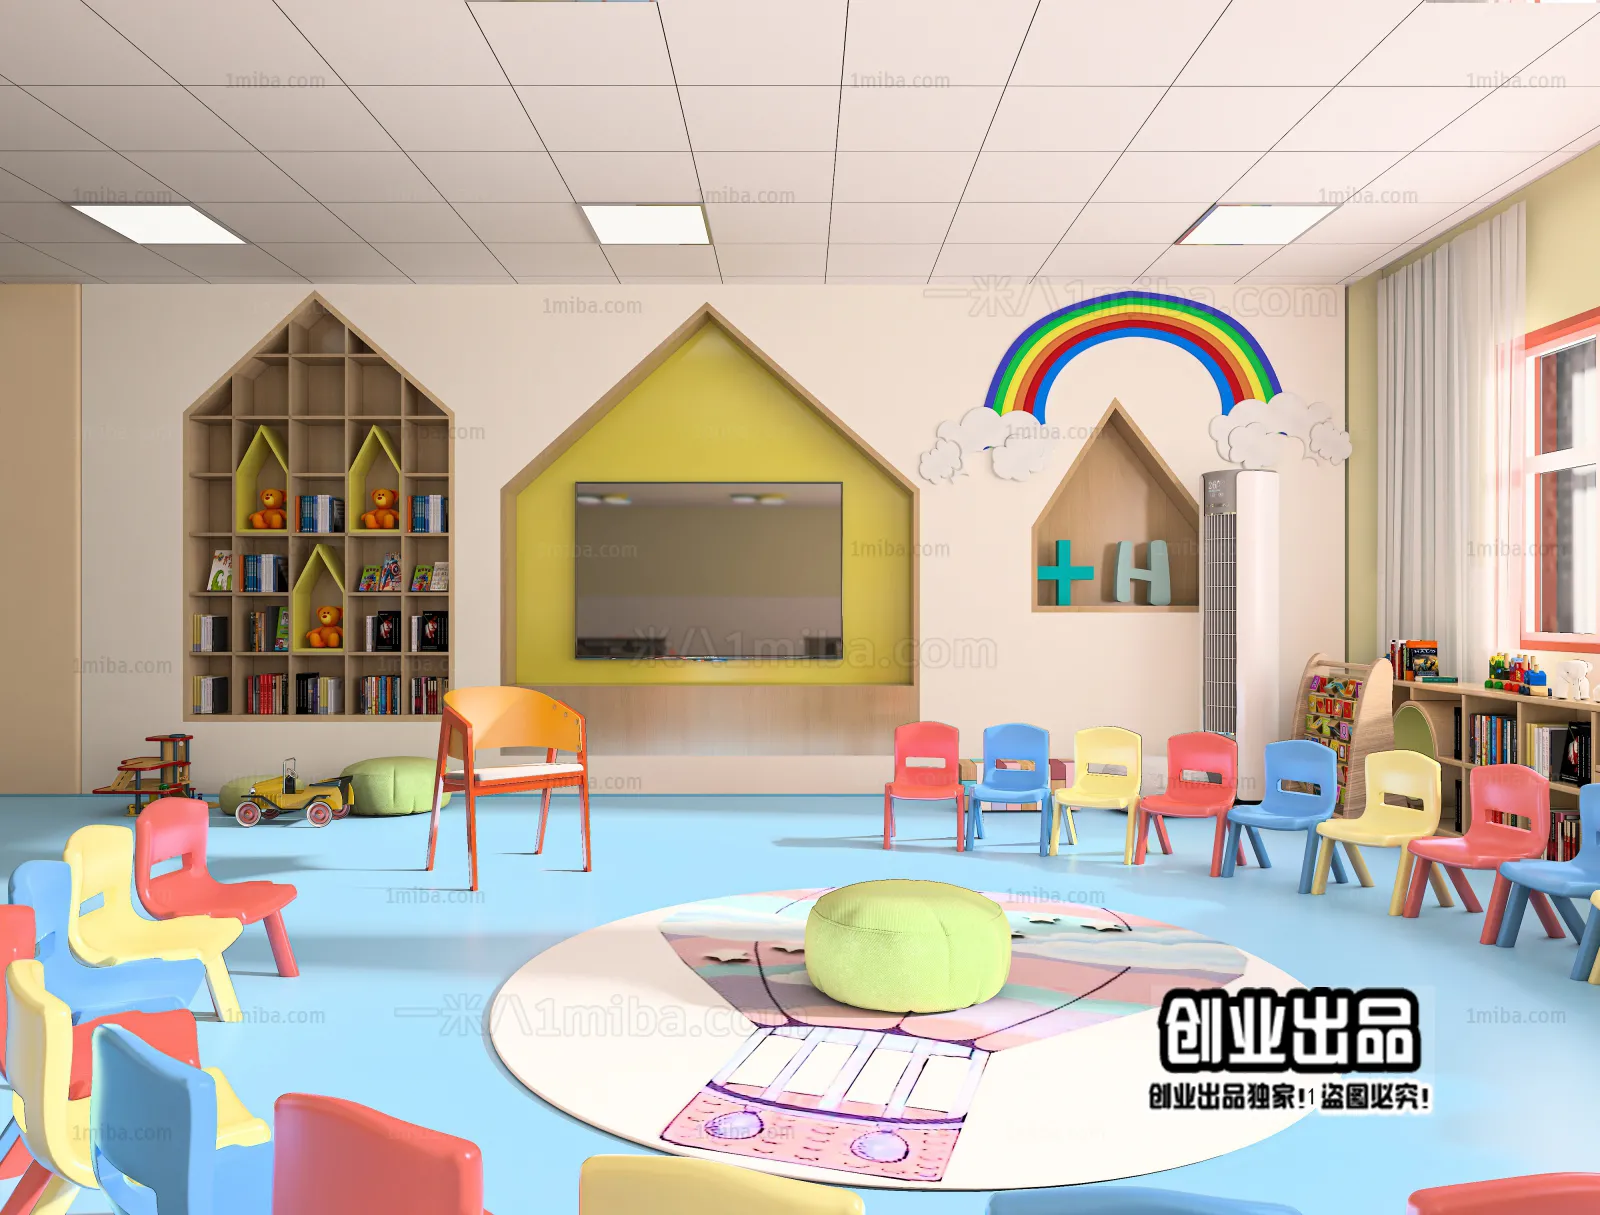 3D SCHOOL INTERIOR (VRAY) – KINDERGARTEN 3D SCENES – 009